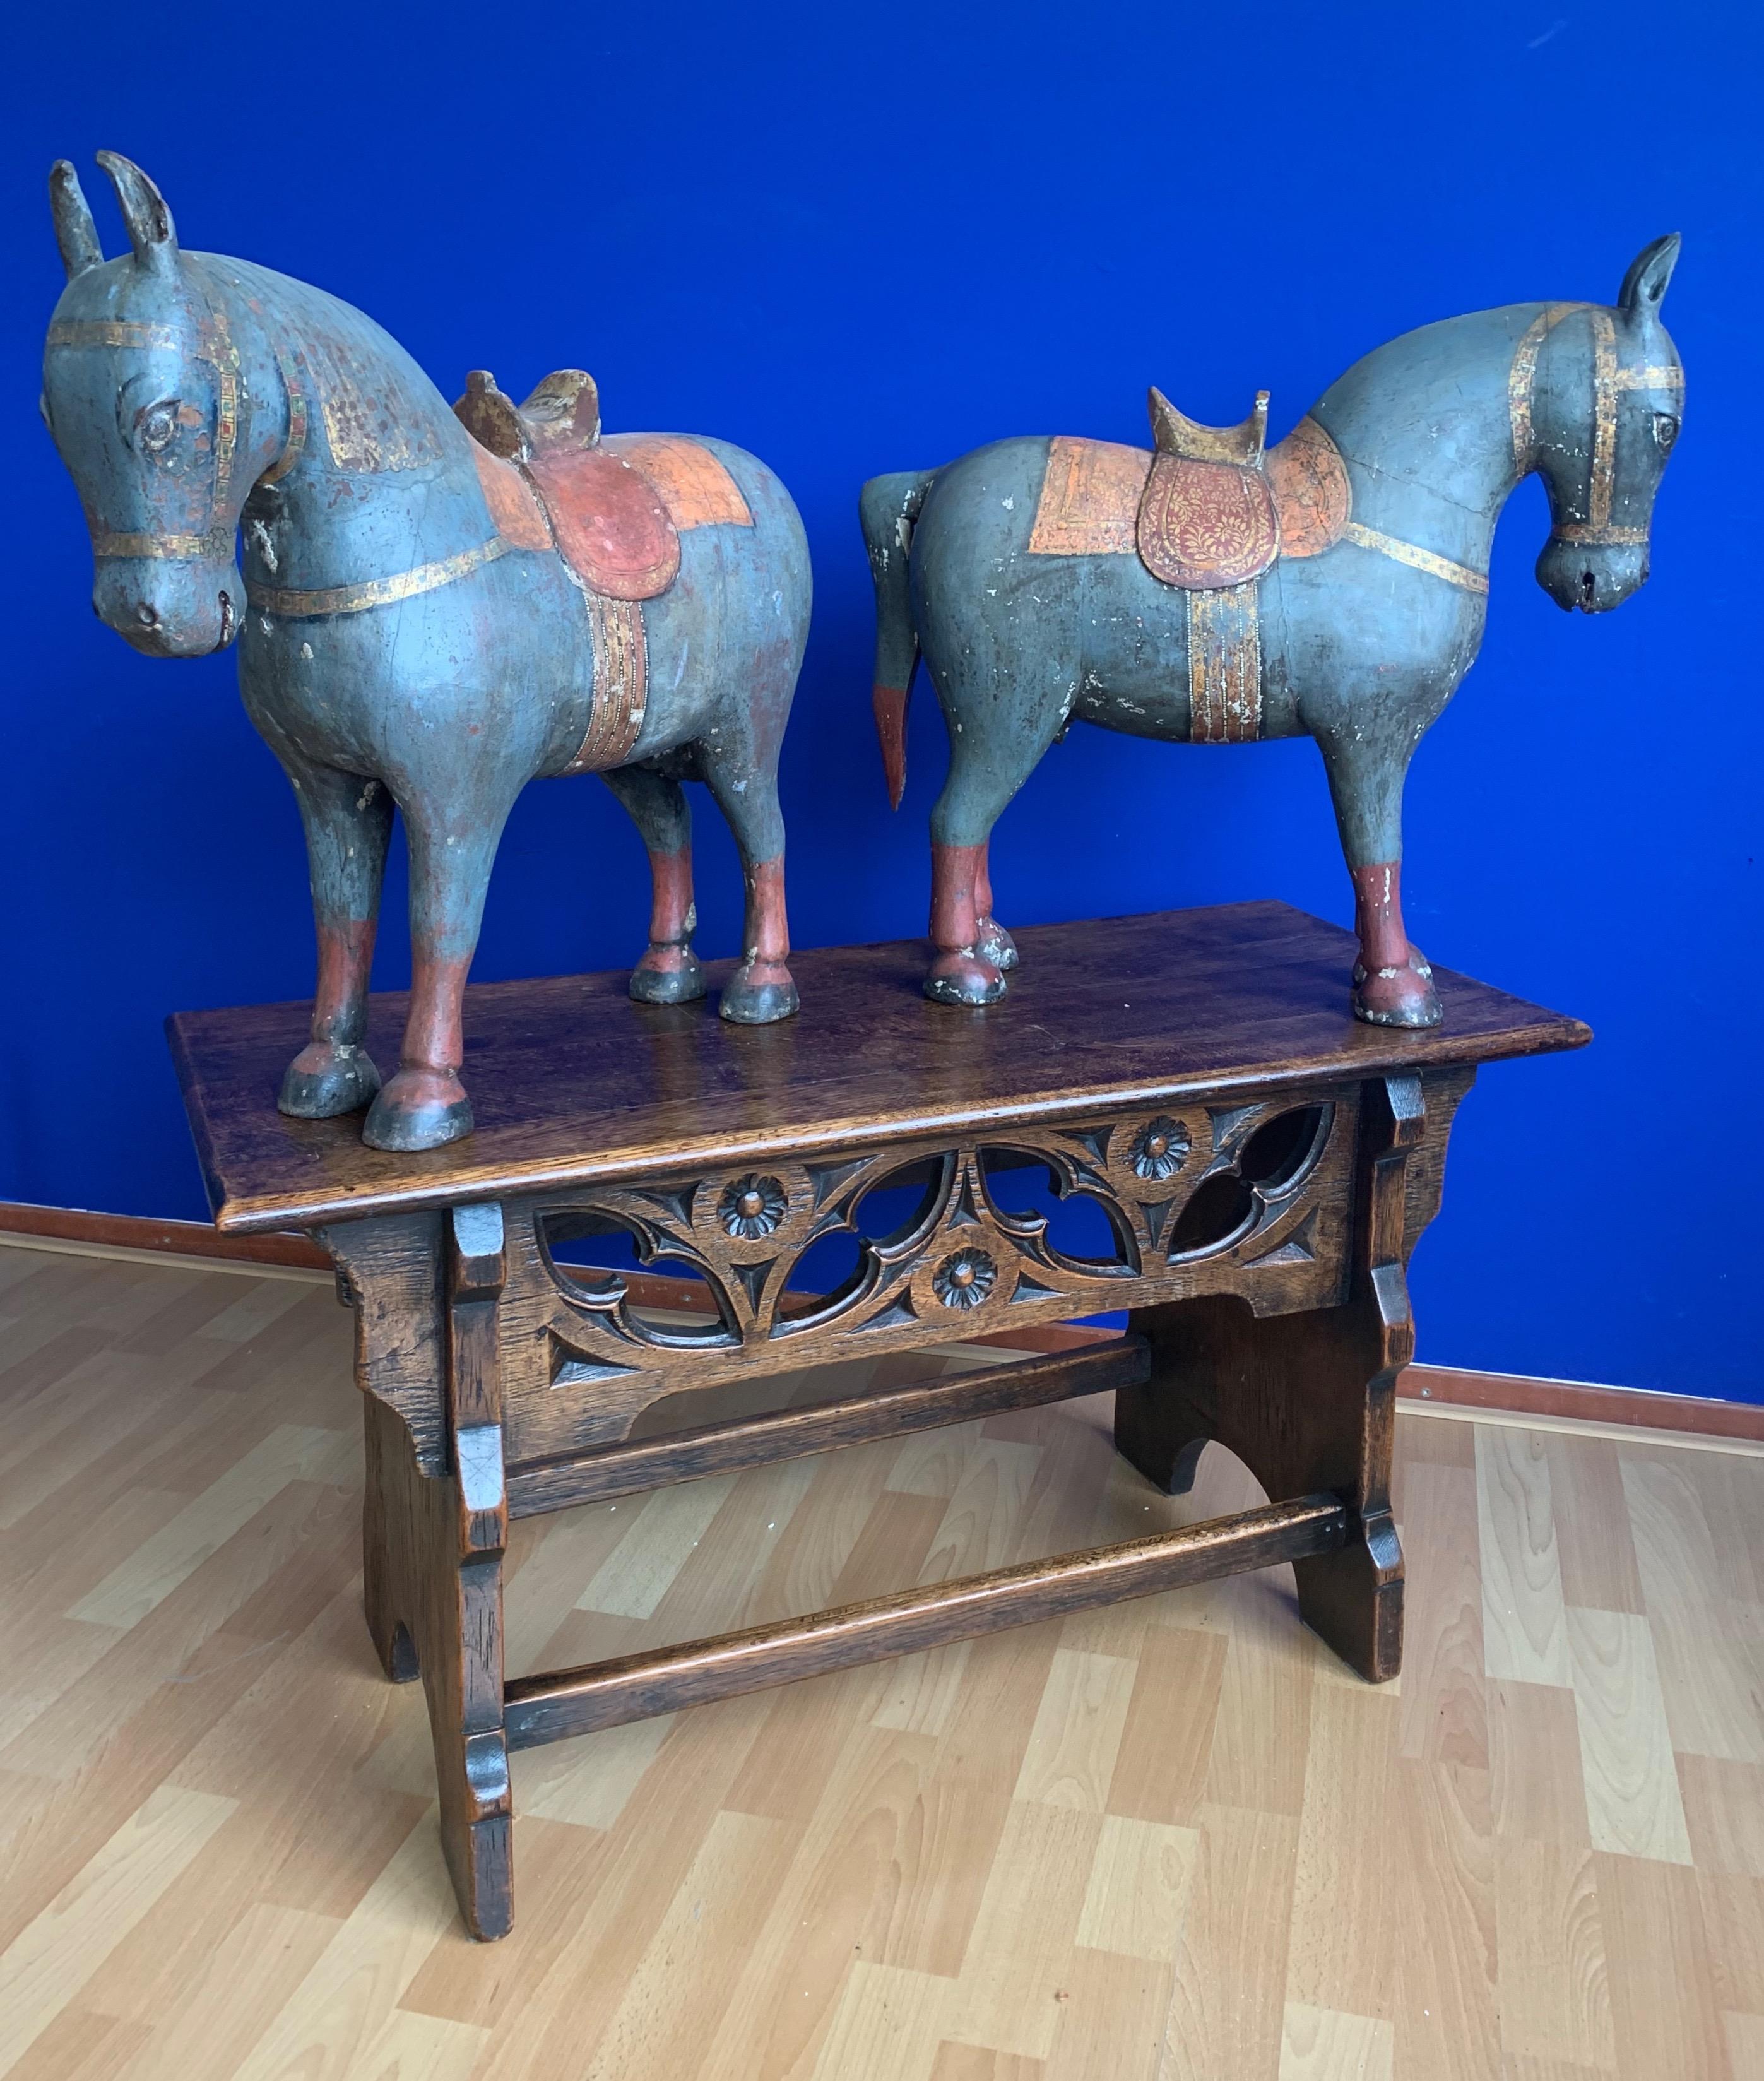 Une paire de sculptures de chevaux assorties, uniques et étonnantes.

Avec une expérience combinée de près de 30 ans dans le commerce des antiquités, nous avons été ravis de trouver une fois de plus de magnifiques antiquités artisanales et